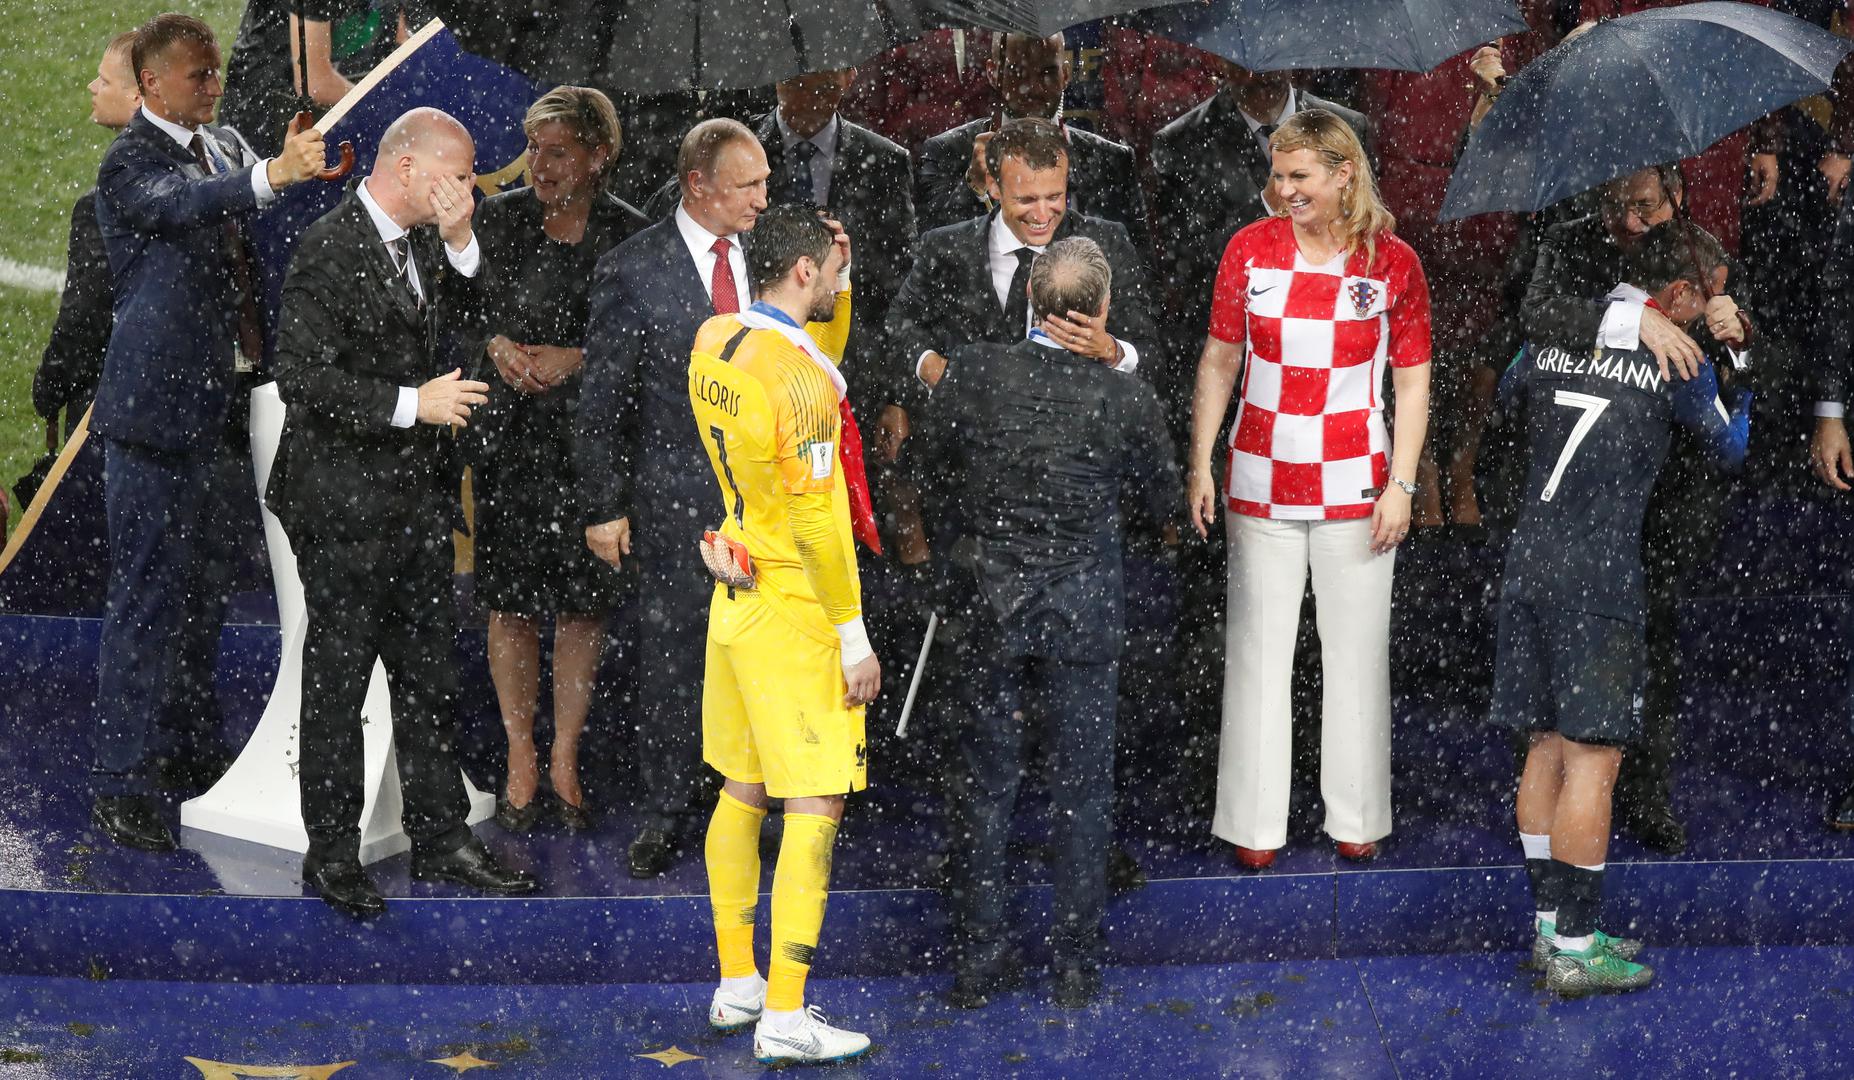 I dok su hrvatska predsjednica Kolinda Grabar Kitarović i njezin francuski kolega Emmanuel Macron bili izloženi nepovoljnim vremenskim uvjetima, taj jedan kišobran stajao je iznad glave ruskog predsjednika Vladimira Putina.

